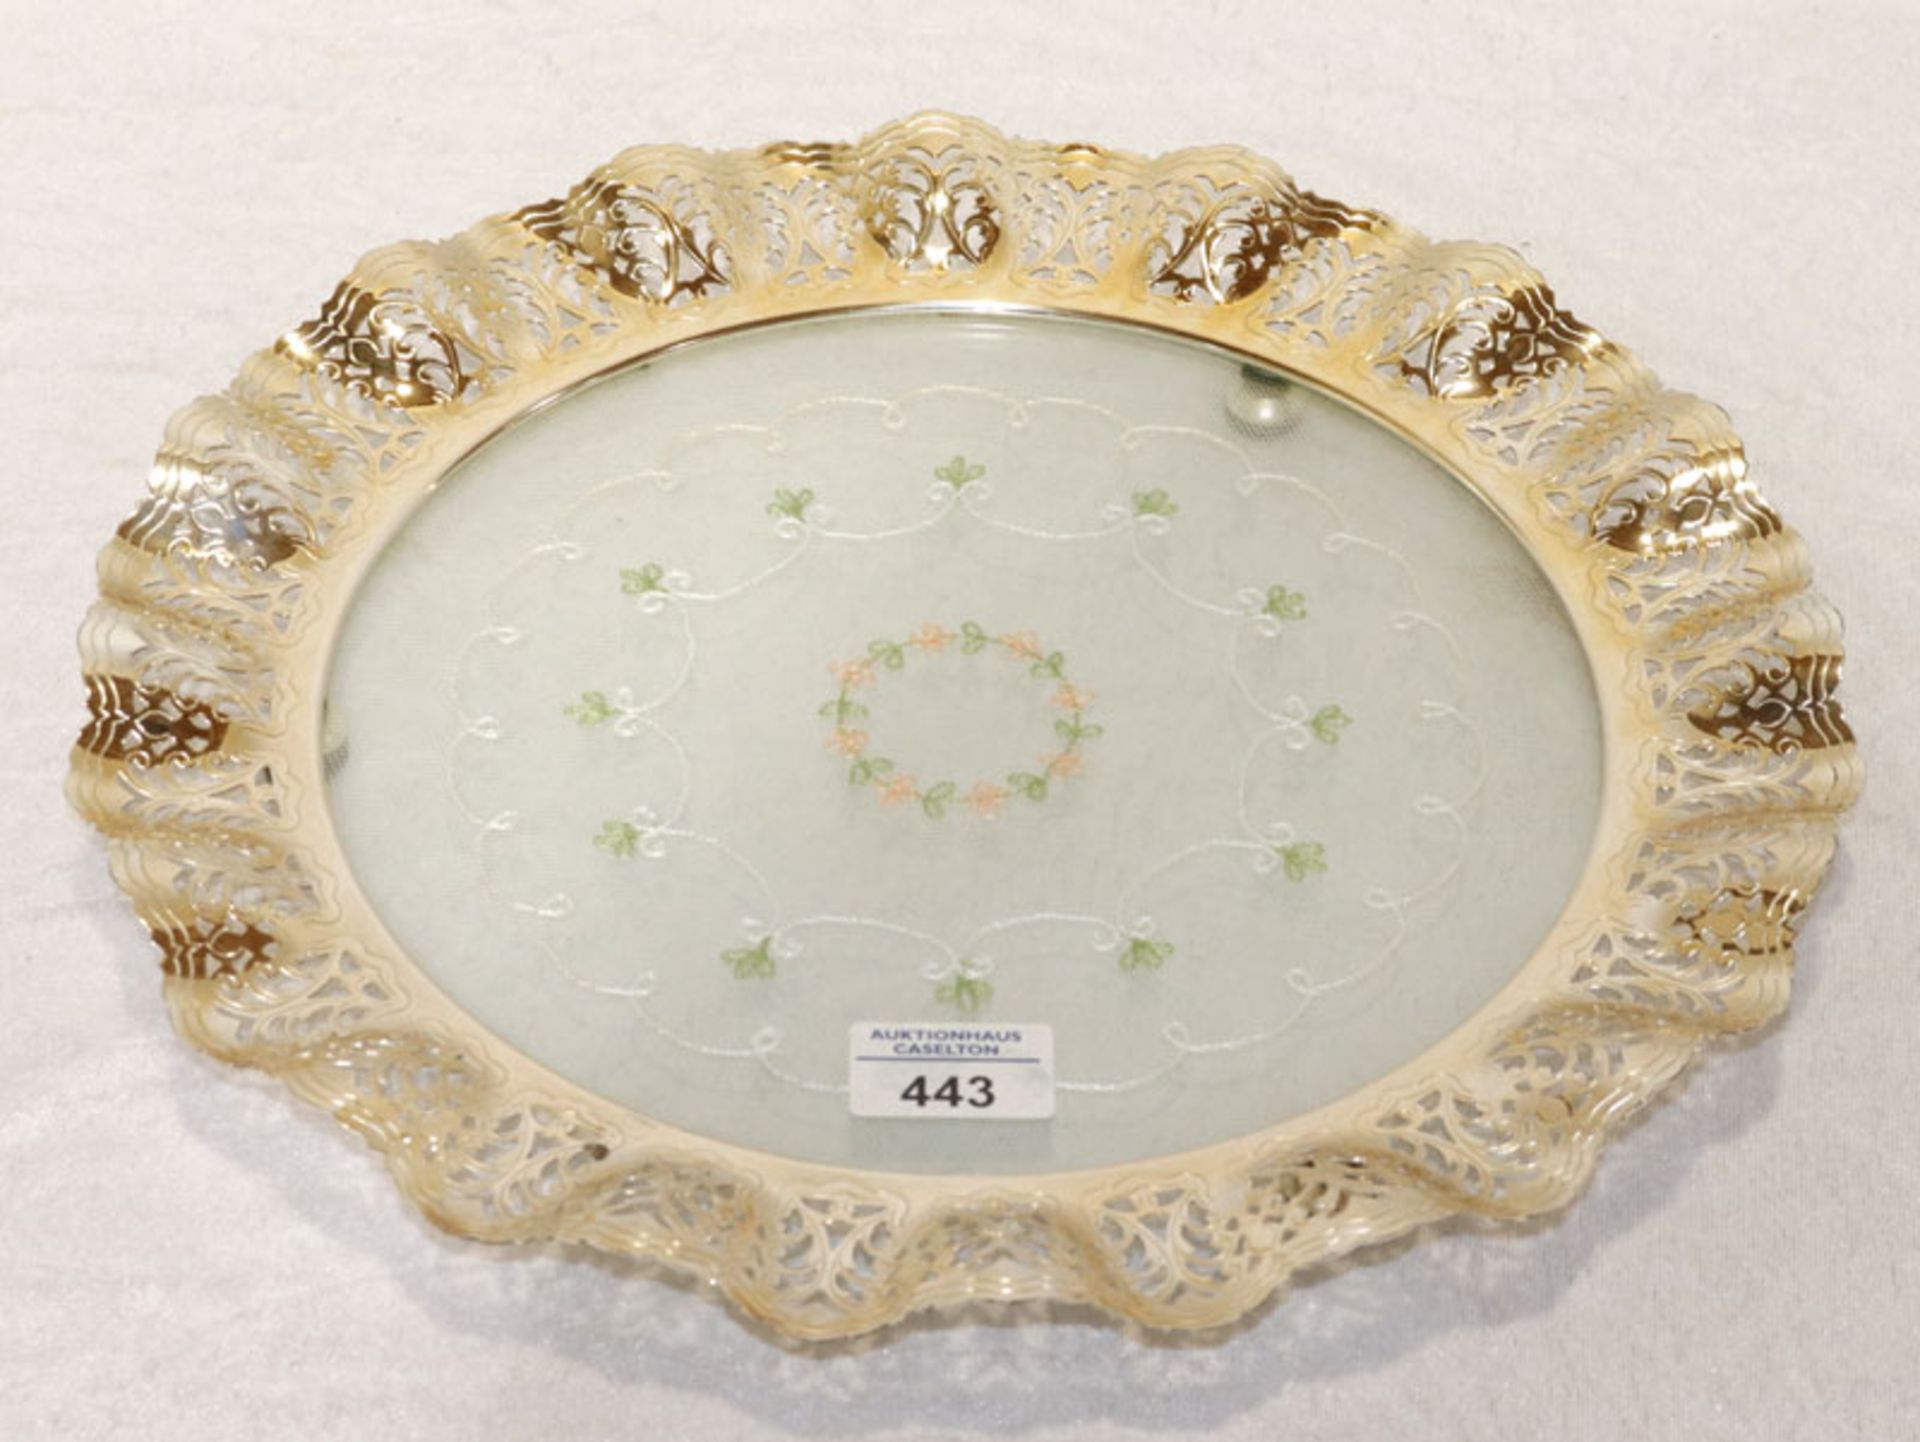 Tortenplatte, Glas mit Spitzendeckchen und Metallrand mit Durchbruchdekor, H 4 cm, D 35 cm, gut